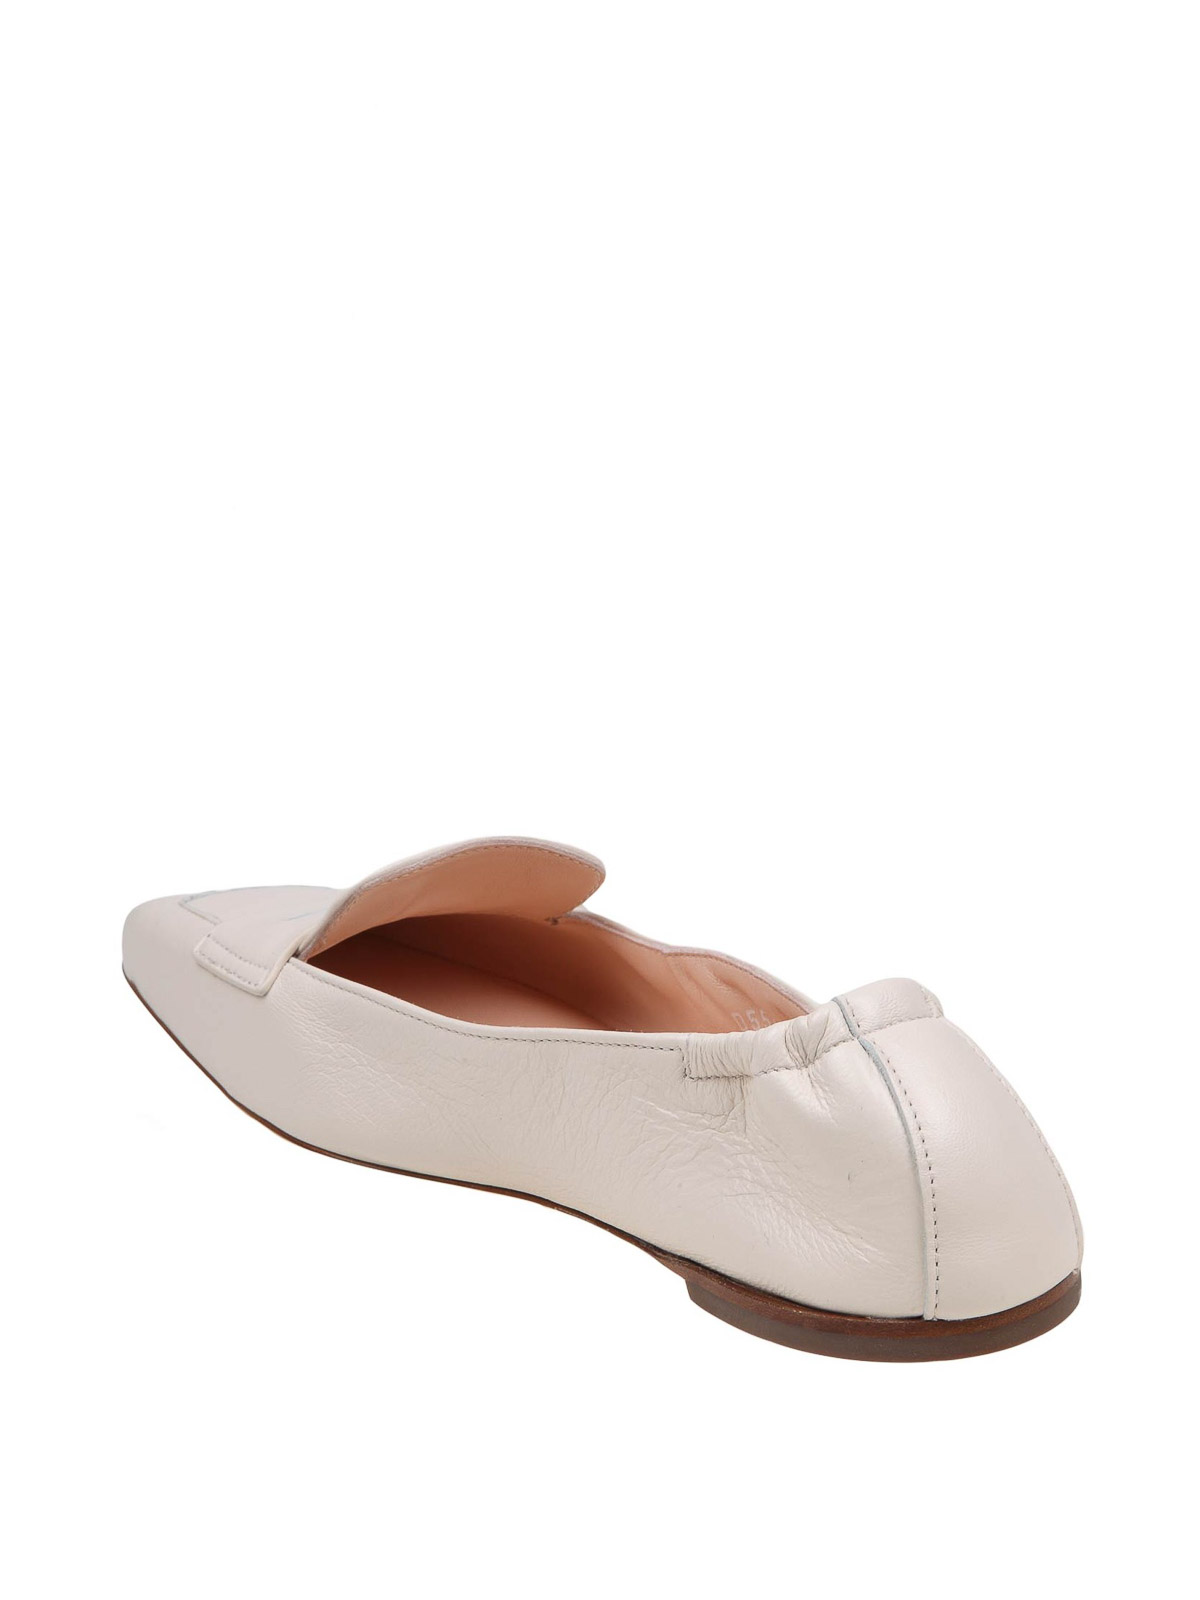 Shop Agl Attilio Giusti Leombruni Leather Loafers In White